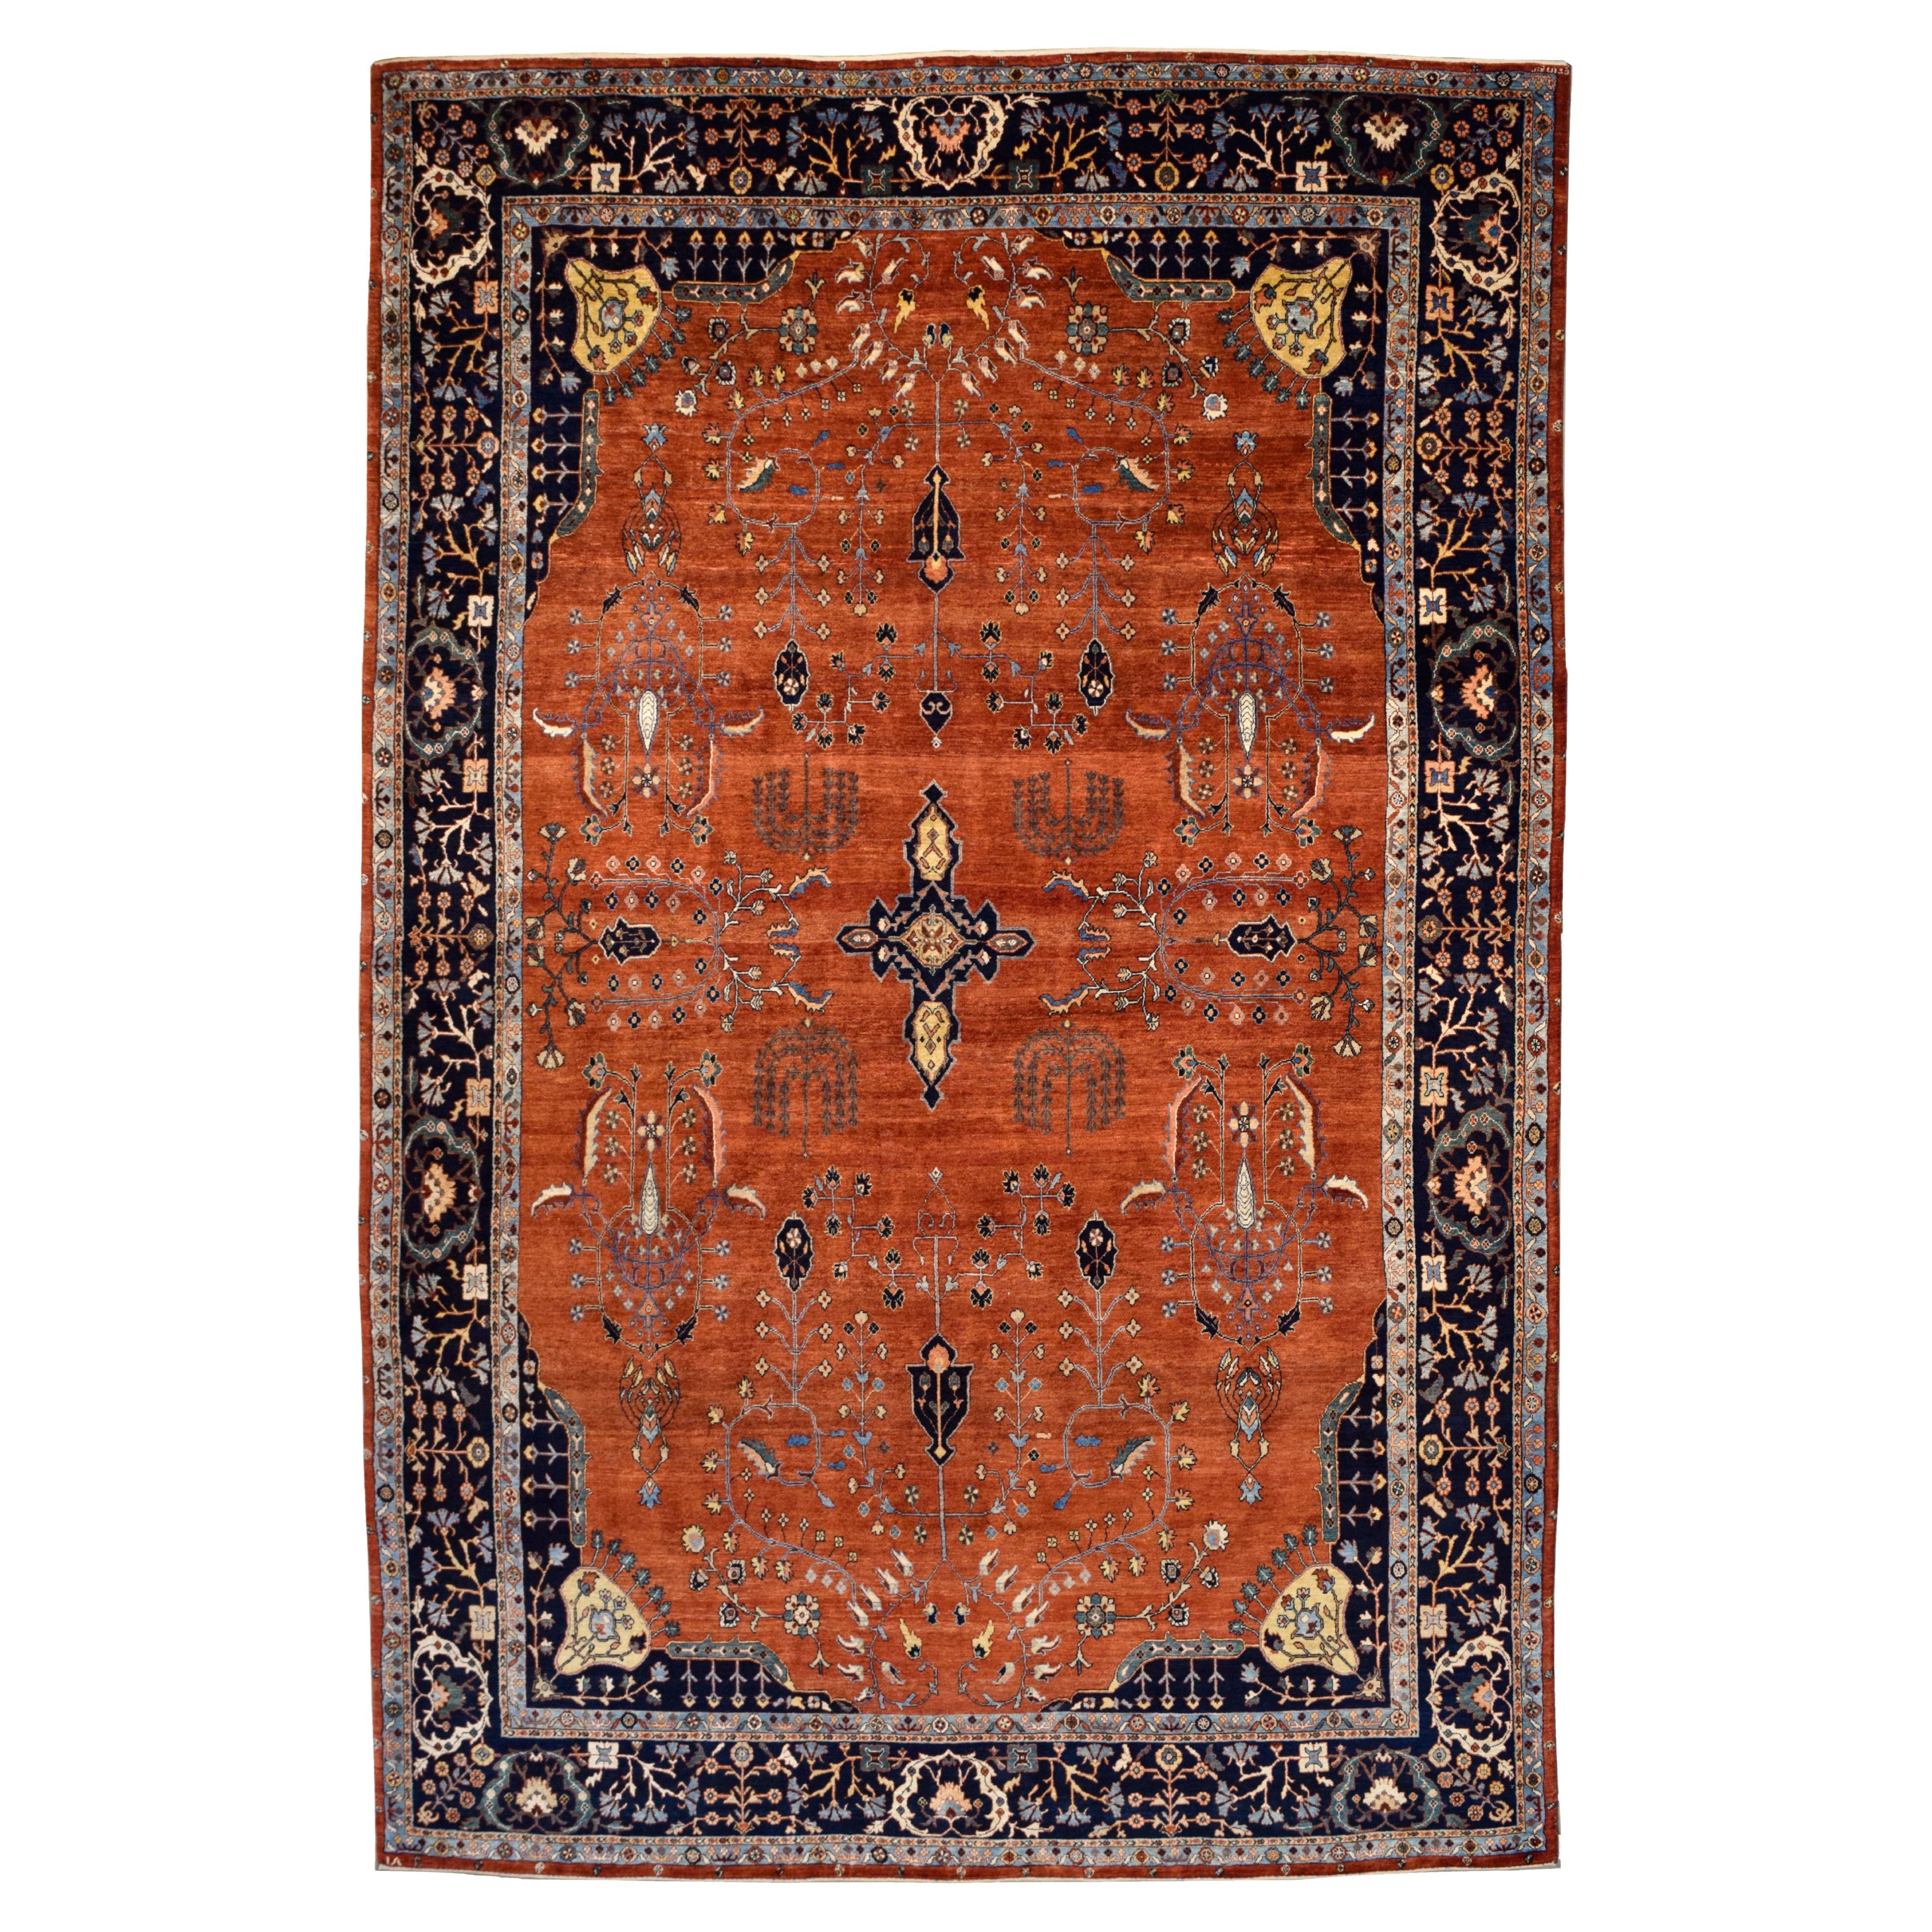 Vintage Orley Shabahang Mohajeran Sarouk Persian Carpet